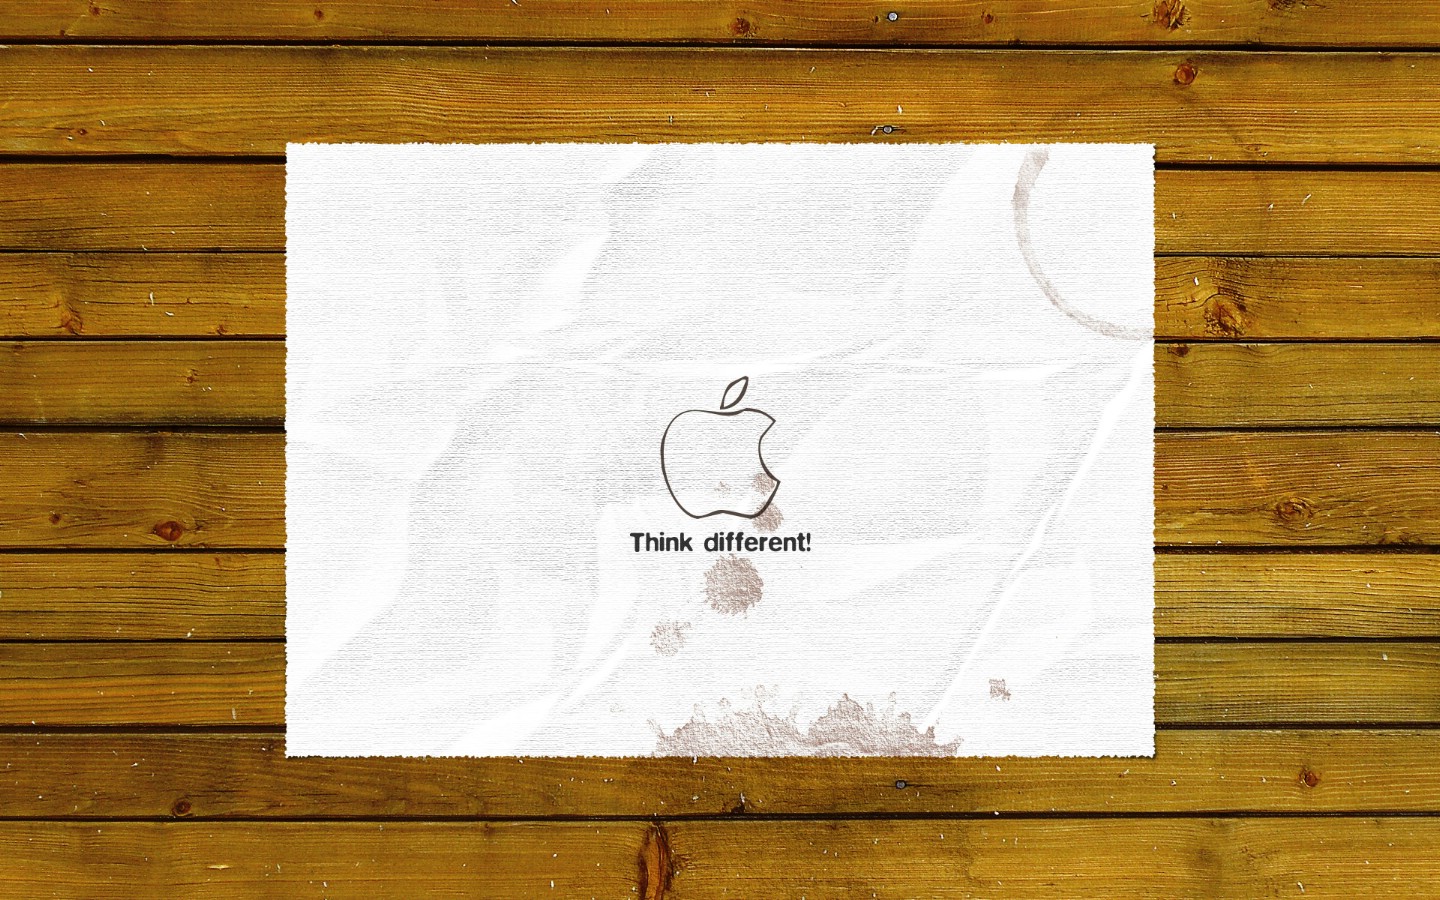 壁纸1440x900Apple主题 80 5壁纸 Apple主题壁纸 Apple主题图片 Apple主题素材 系统壁纸 系统图库 系统图片素材桌面壁纸